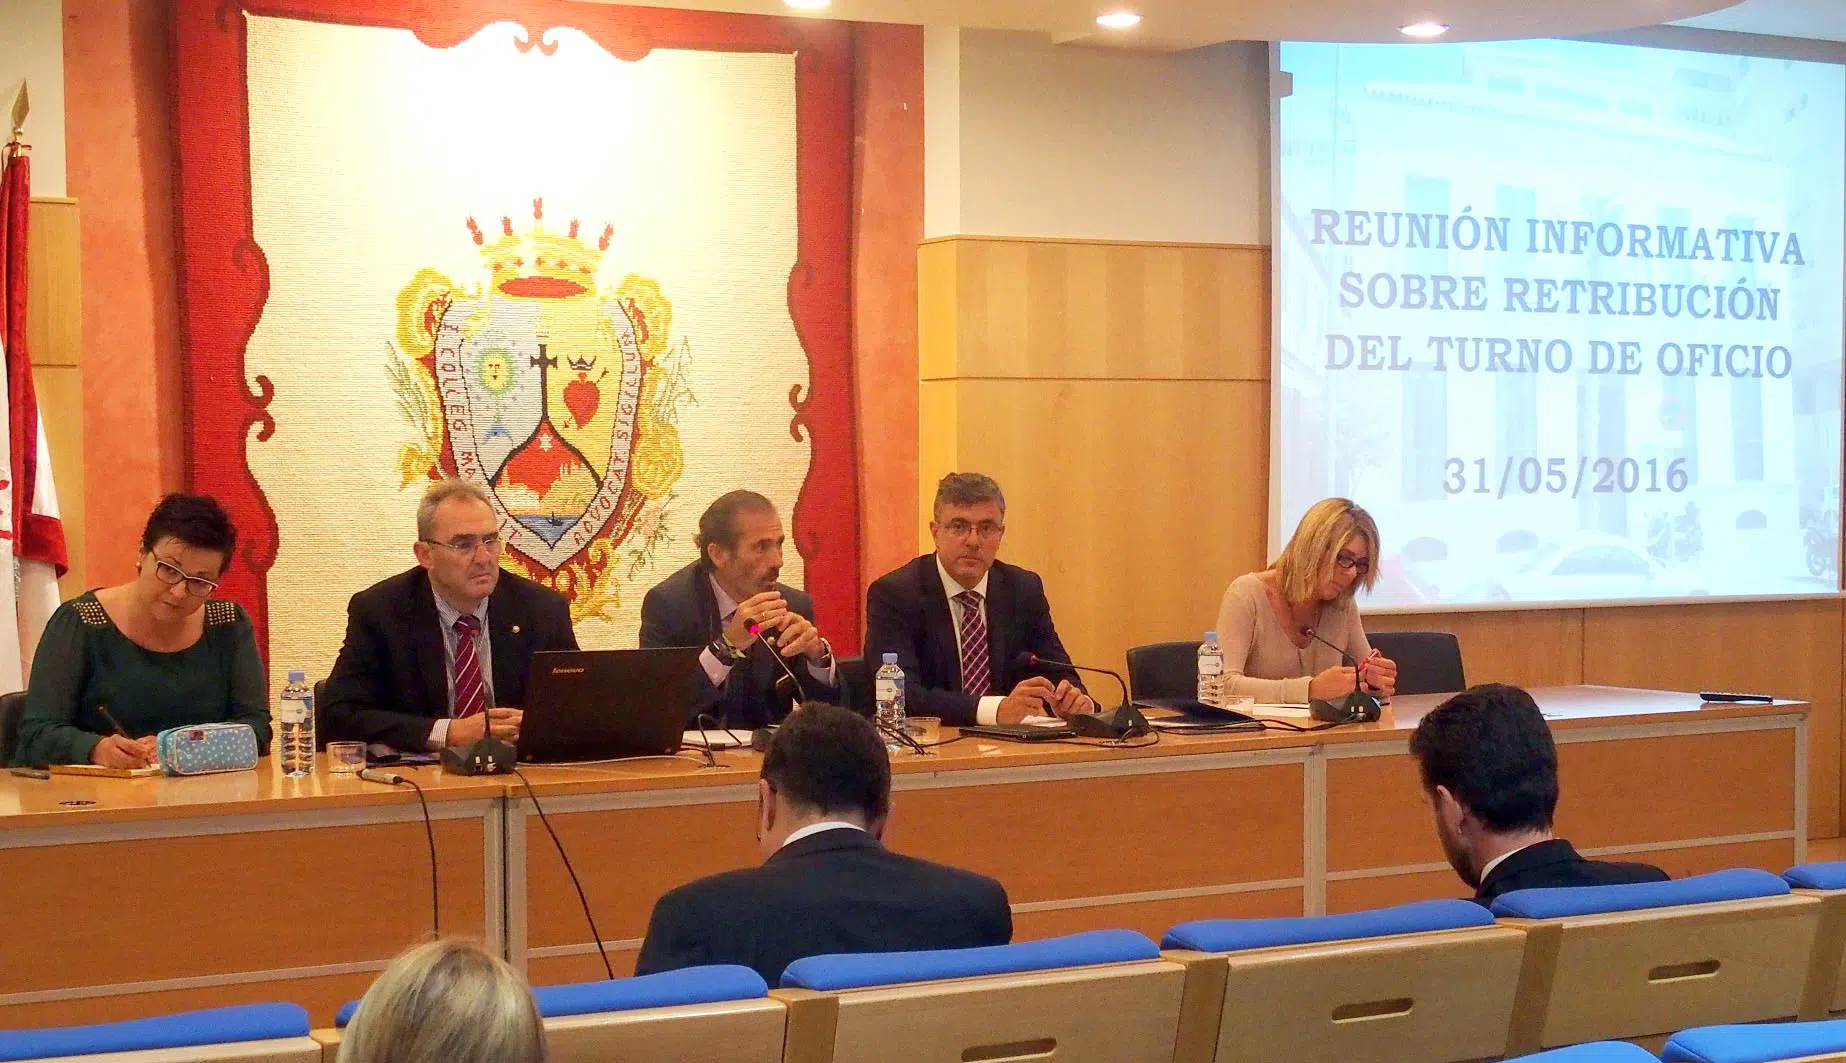 La Junta de Andalucía recula en su plan de reducir los emolumentos al turno de oficio y el ICA Málaga convoca una concentración